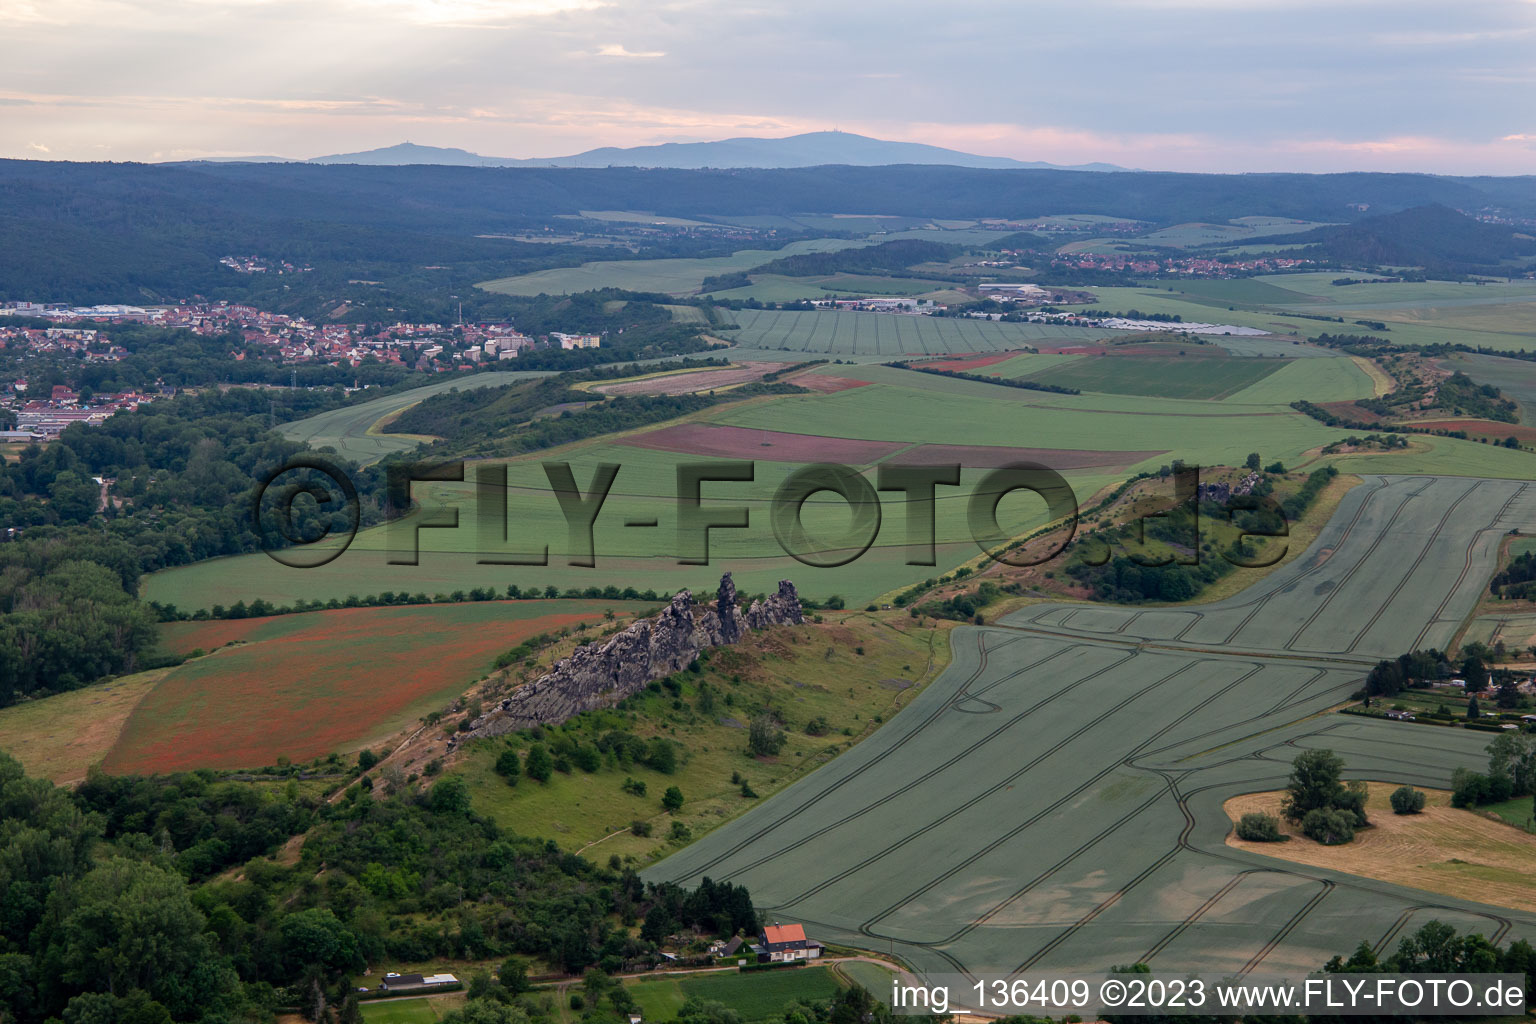 Luftbild von Teufelsmauer (Königsstein) im Ortsteil Weddersleben in Thale im Bundesland Sachsen-Anhalt, Deutschland